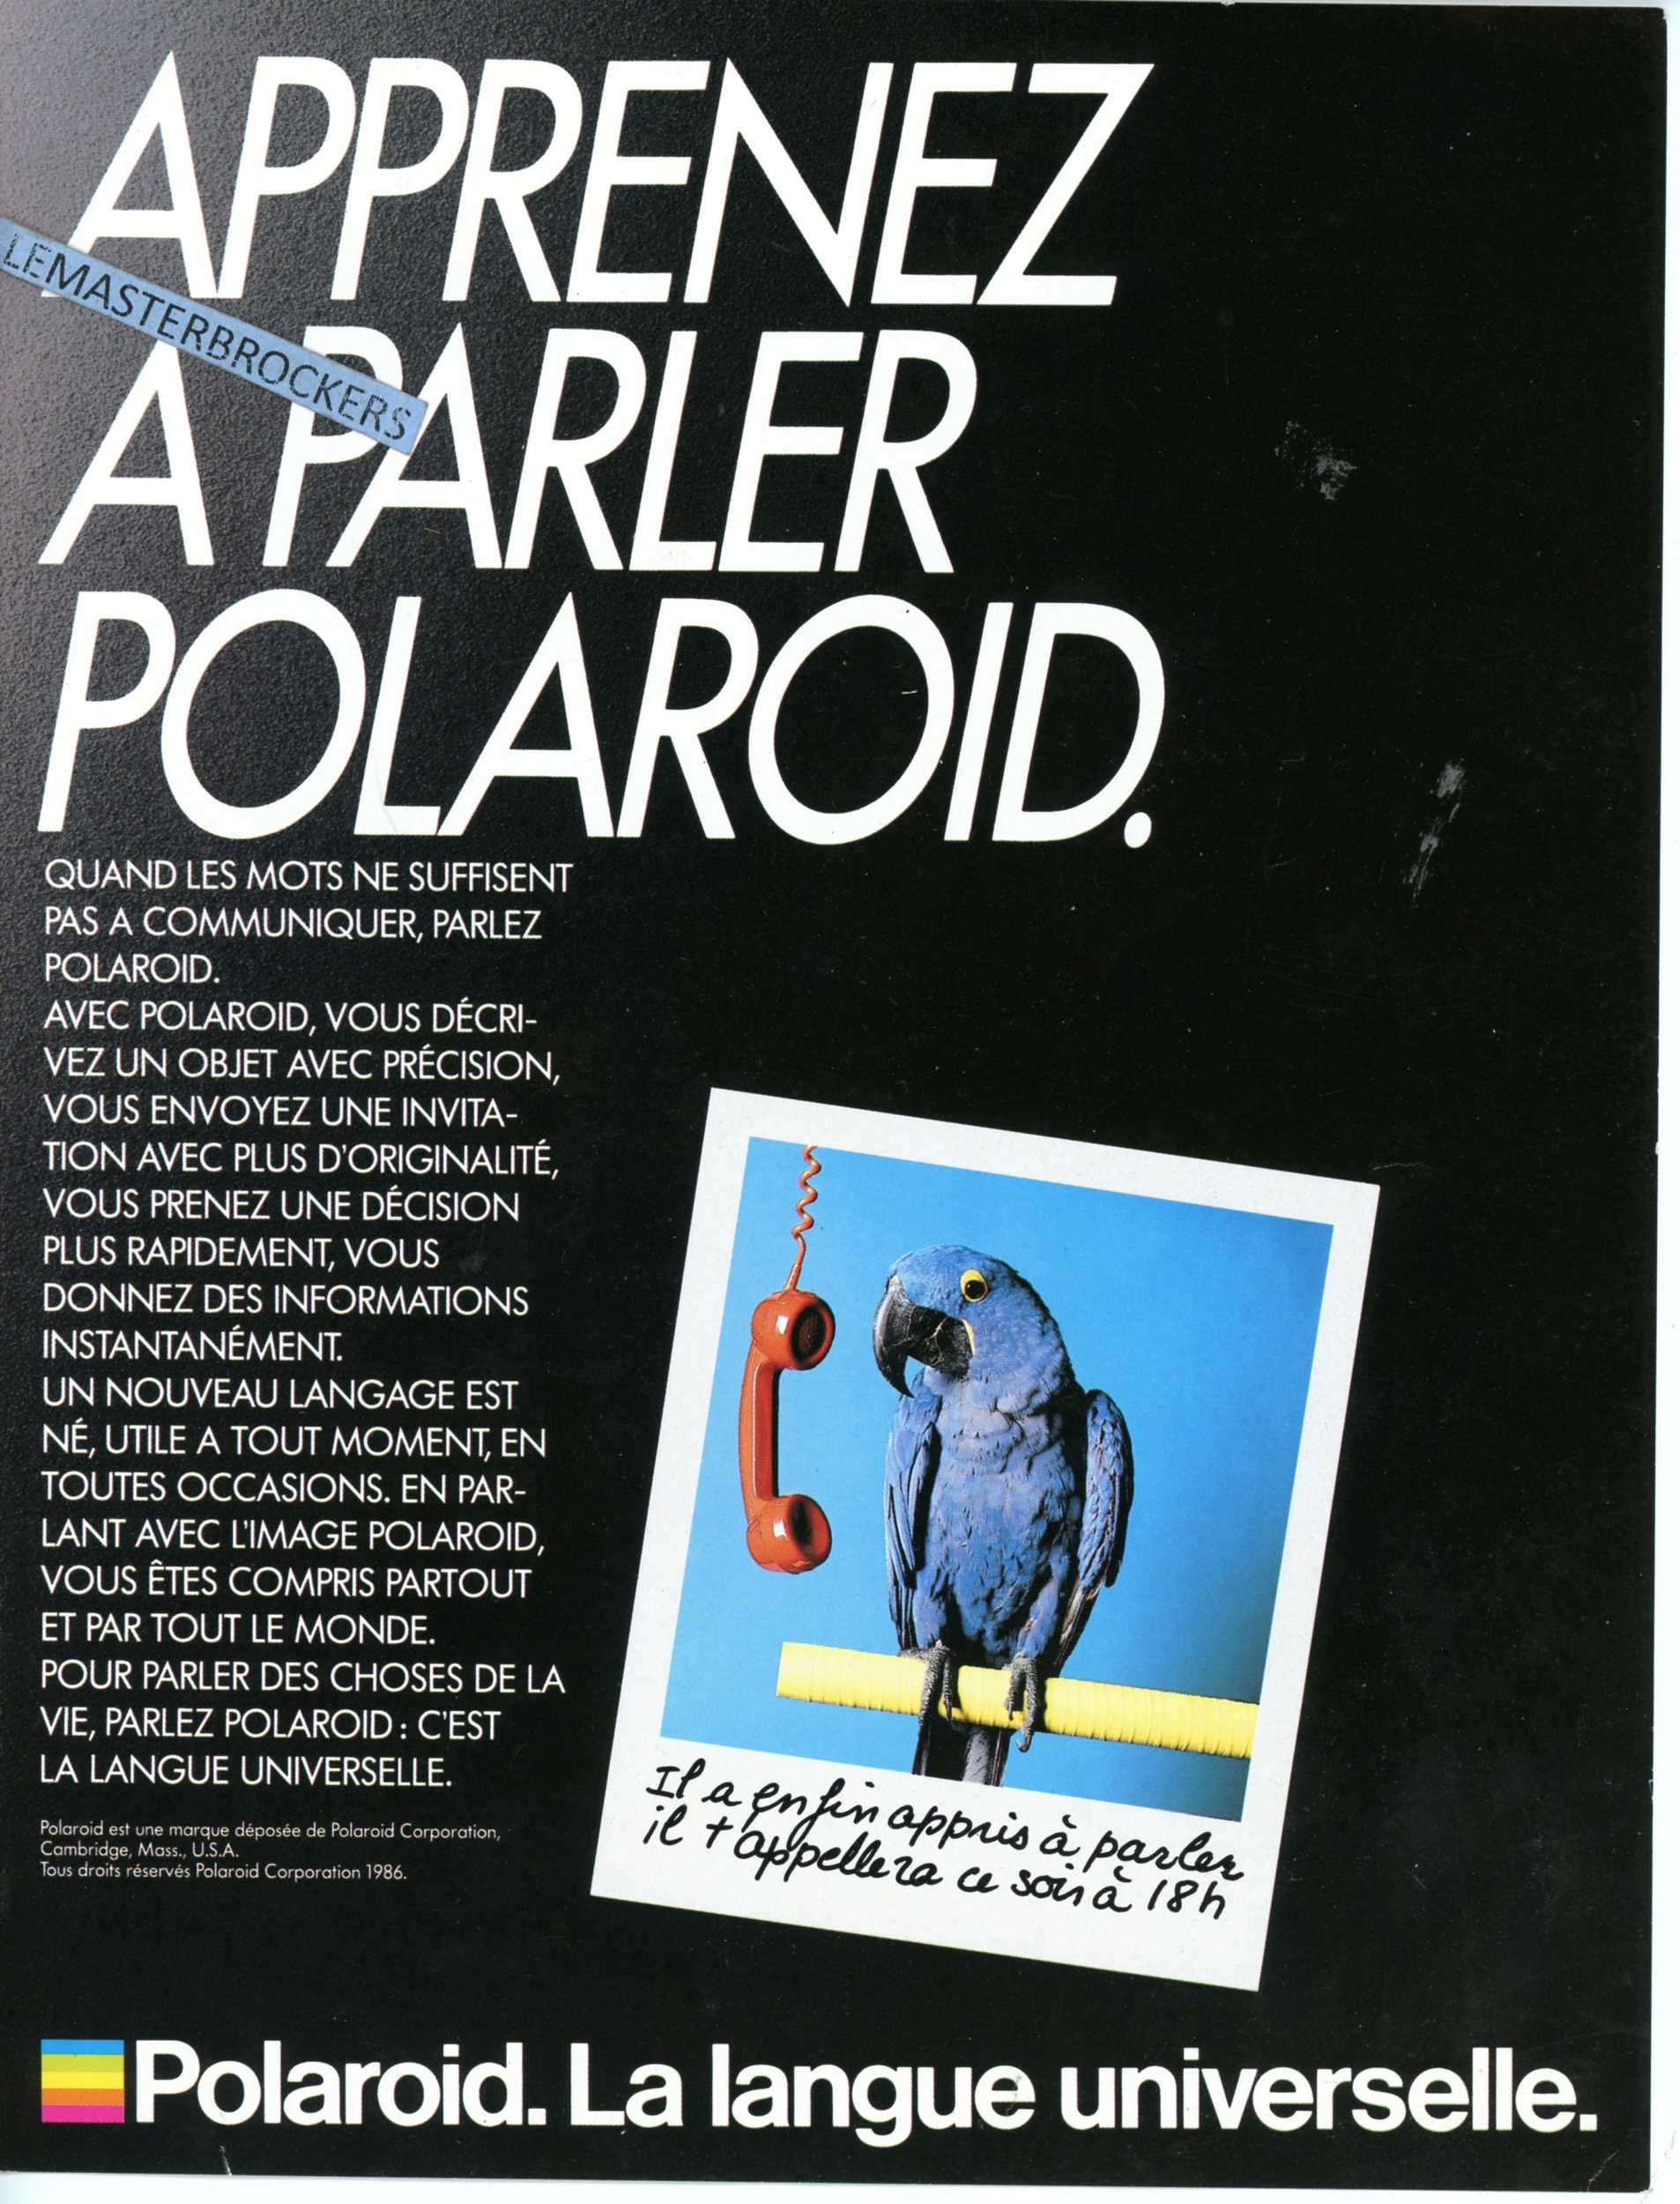 POLAROID PUBLICITÉ PRESSE 1986 PUB ADVERTISING LEMASTERBROCKERS VINTAGE